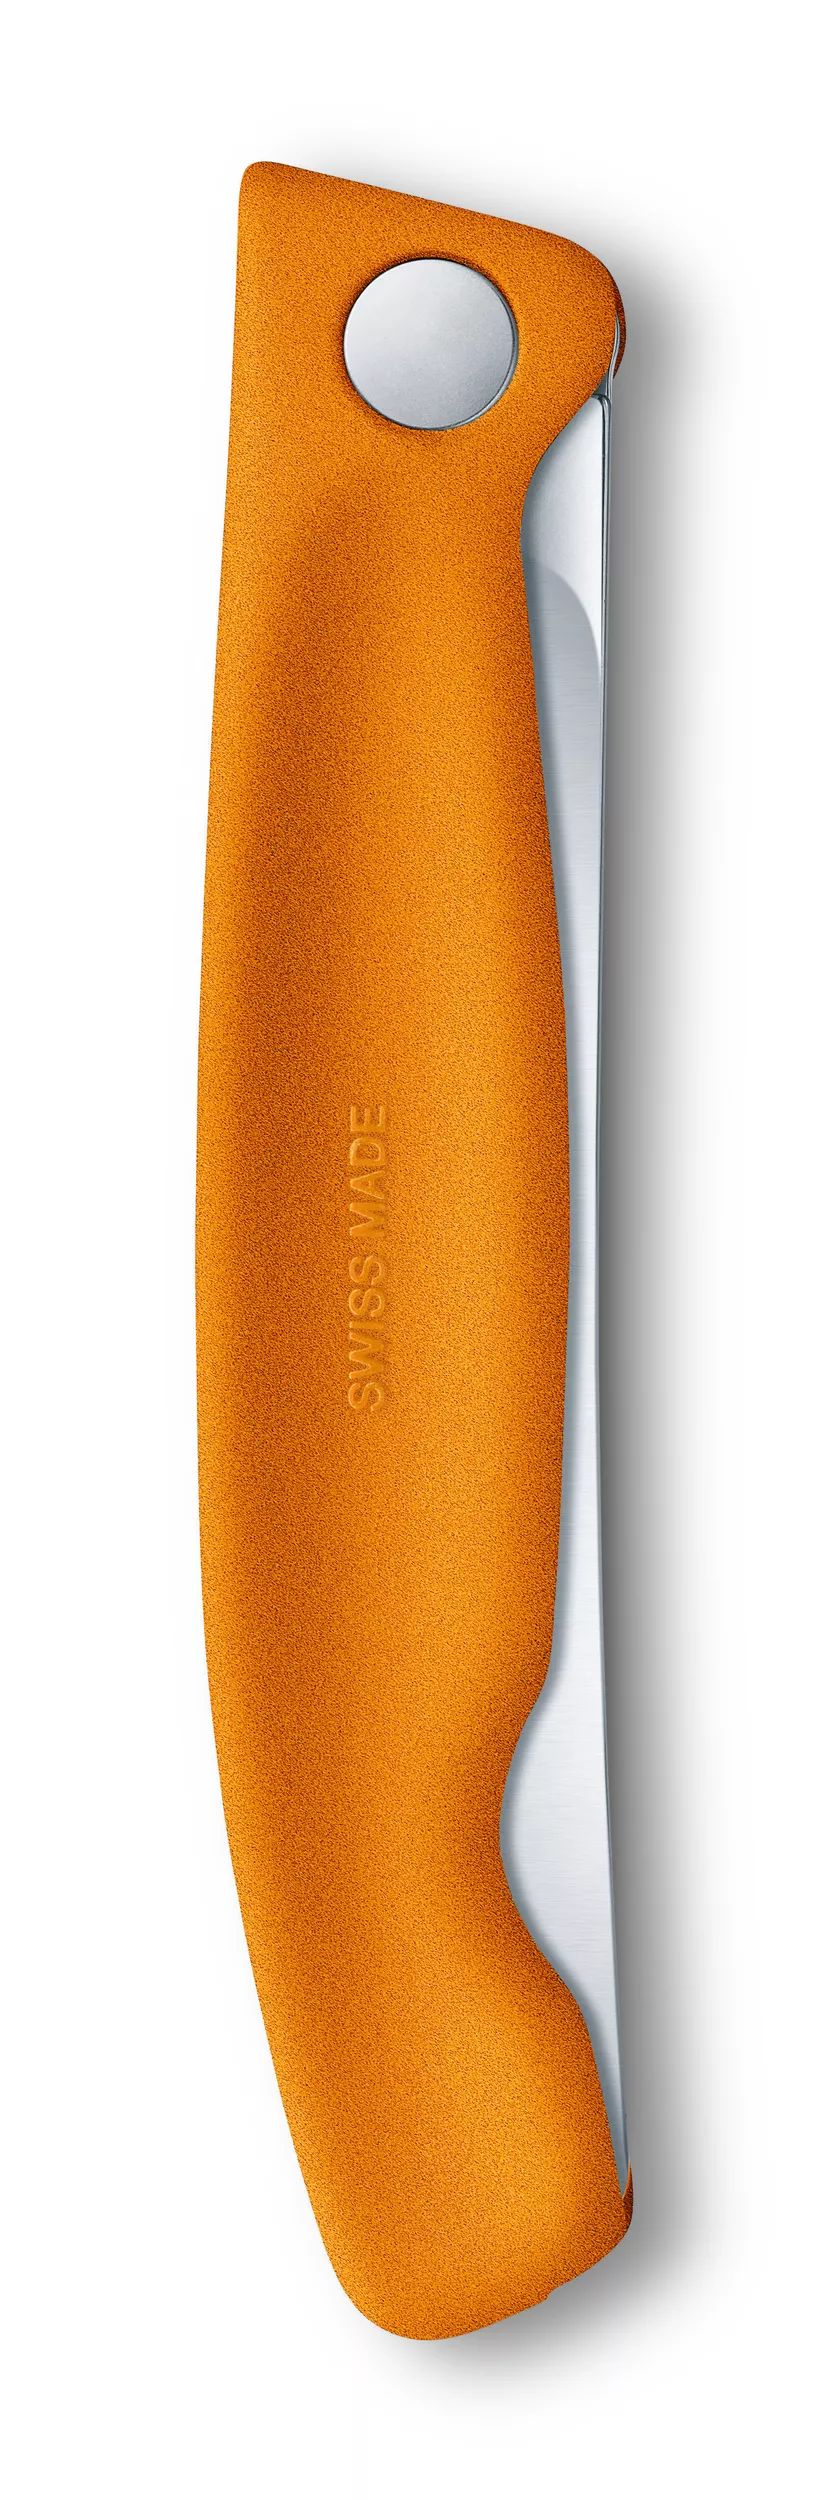 Swiss Classic Picnic Knife - 6.7836.F9B